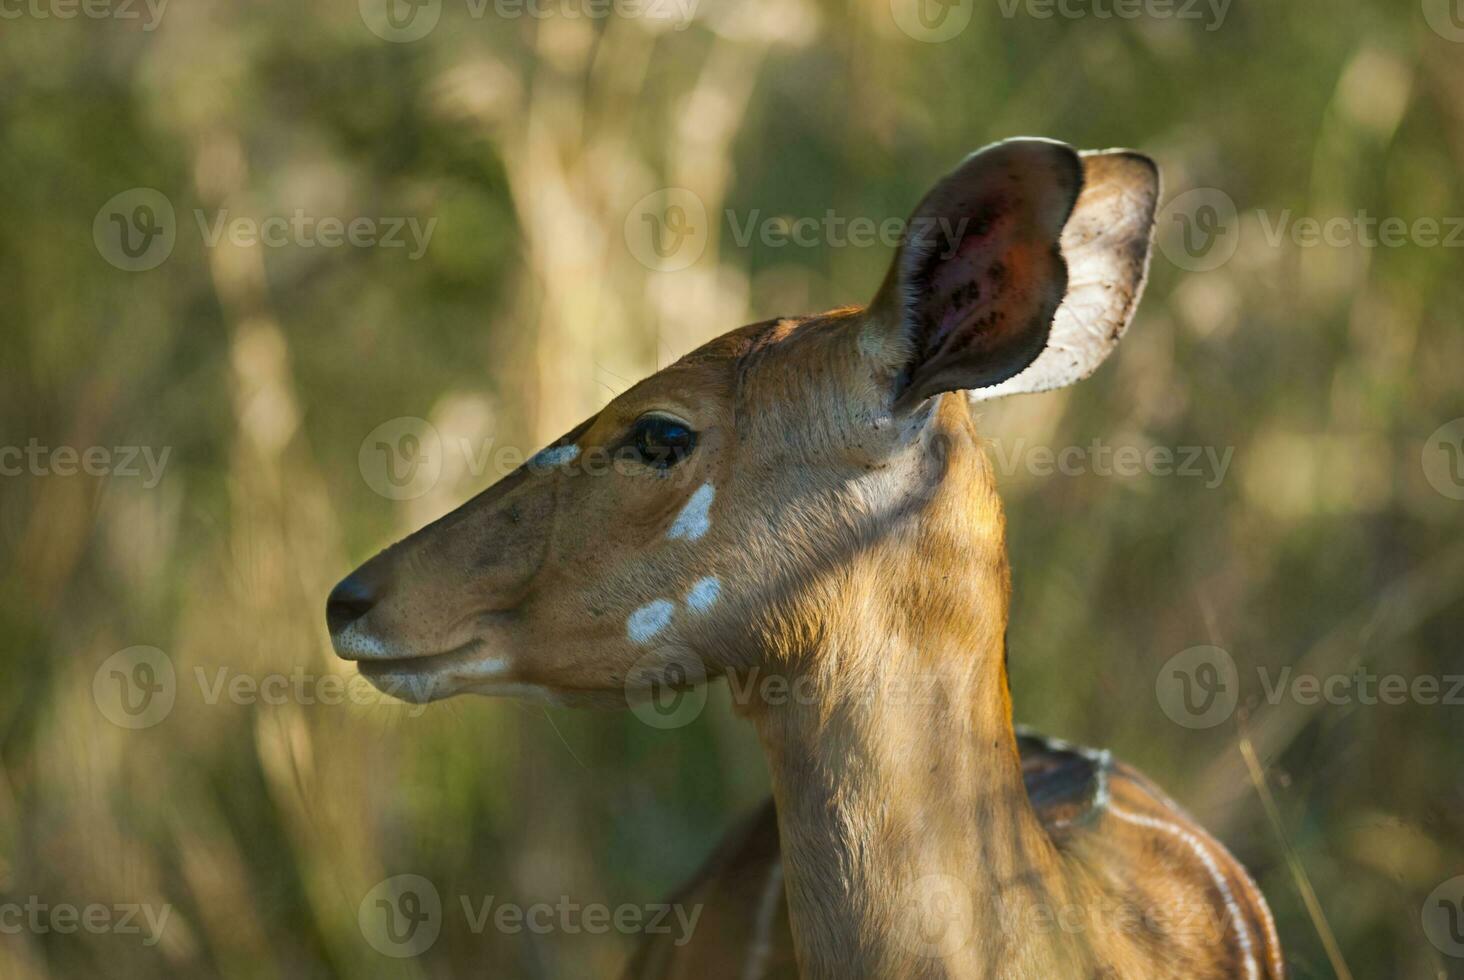 nyala antilop manlig och kvinna , kruger nationell parkera, söder afrika foto